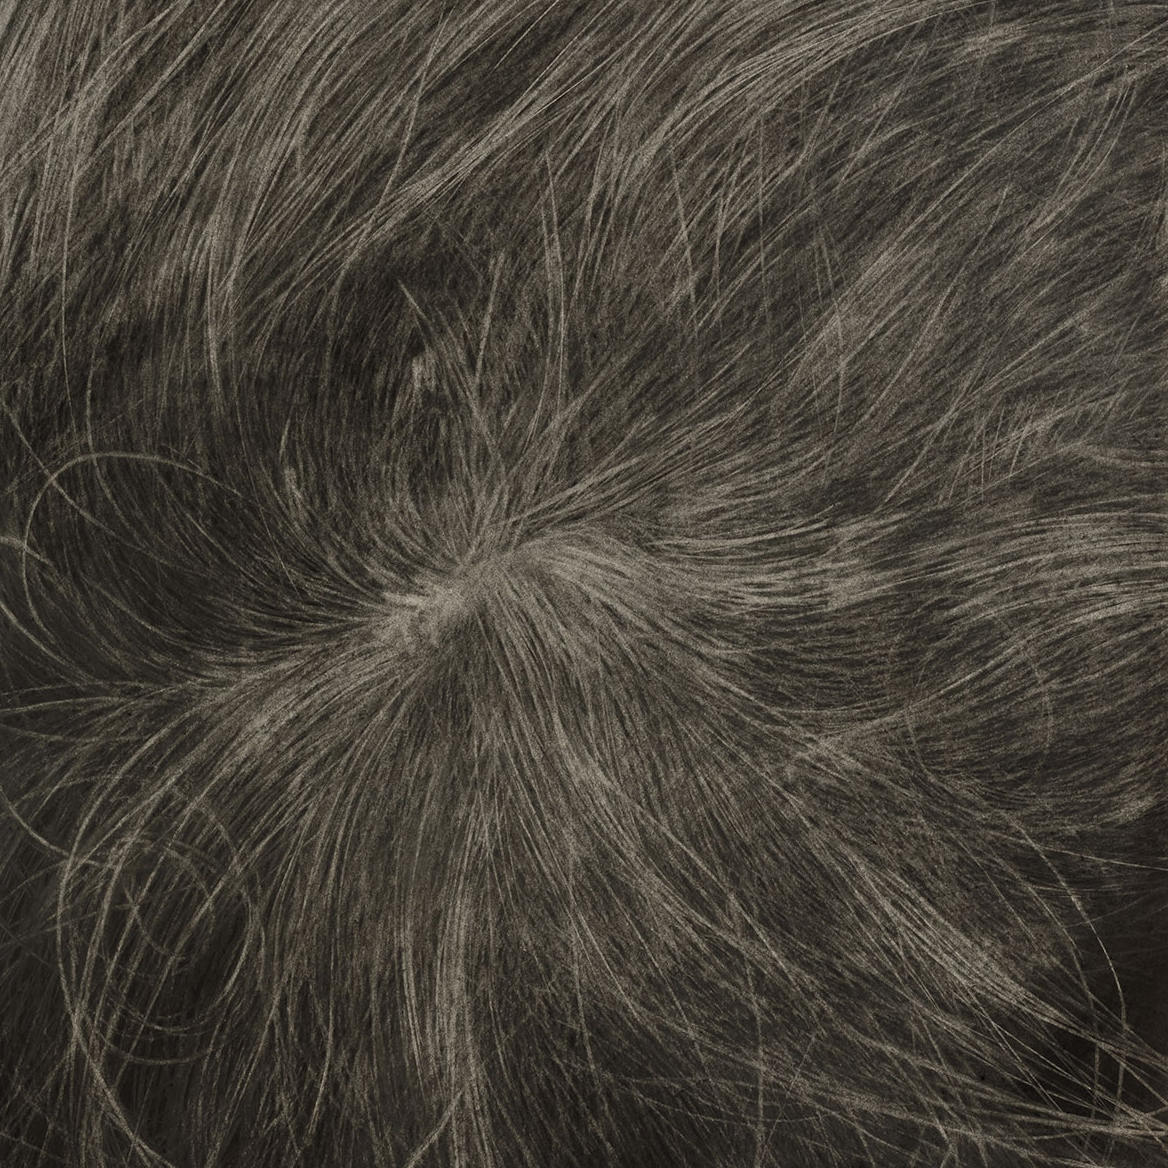 Ausschnitt einer Zeichnung von Juewen Zhang. Es wurde mit Kohle und Bleistift auf Papier gearbeitet. Zu sehen ist eine Fotorealistische Zeichnung eines Haarwirbels. 